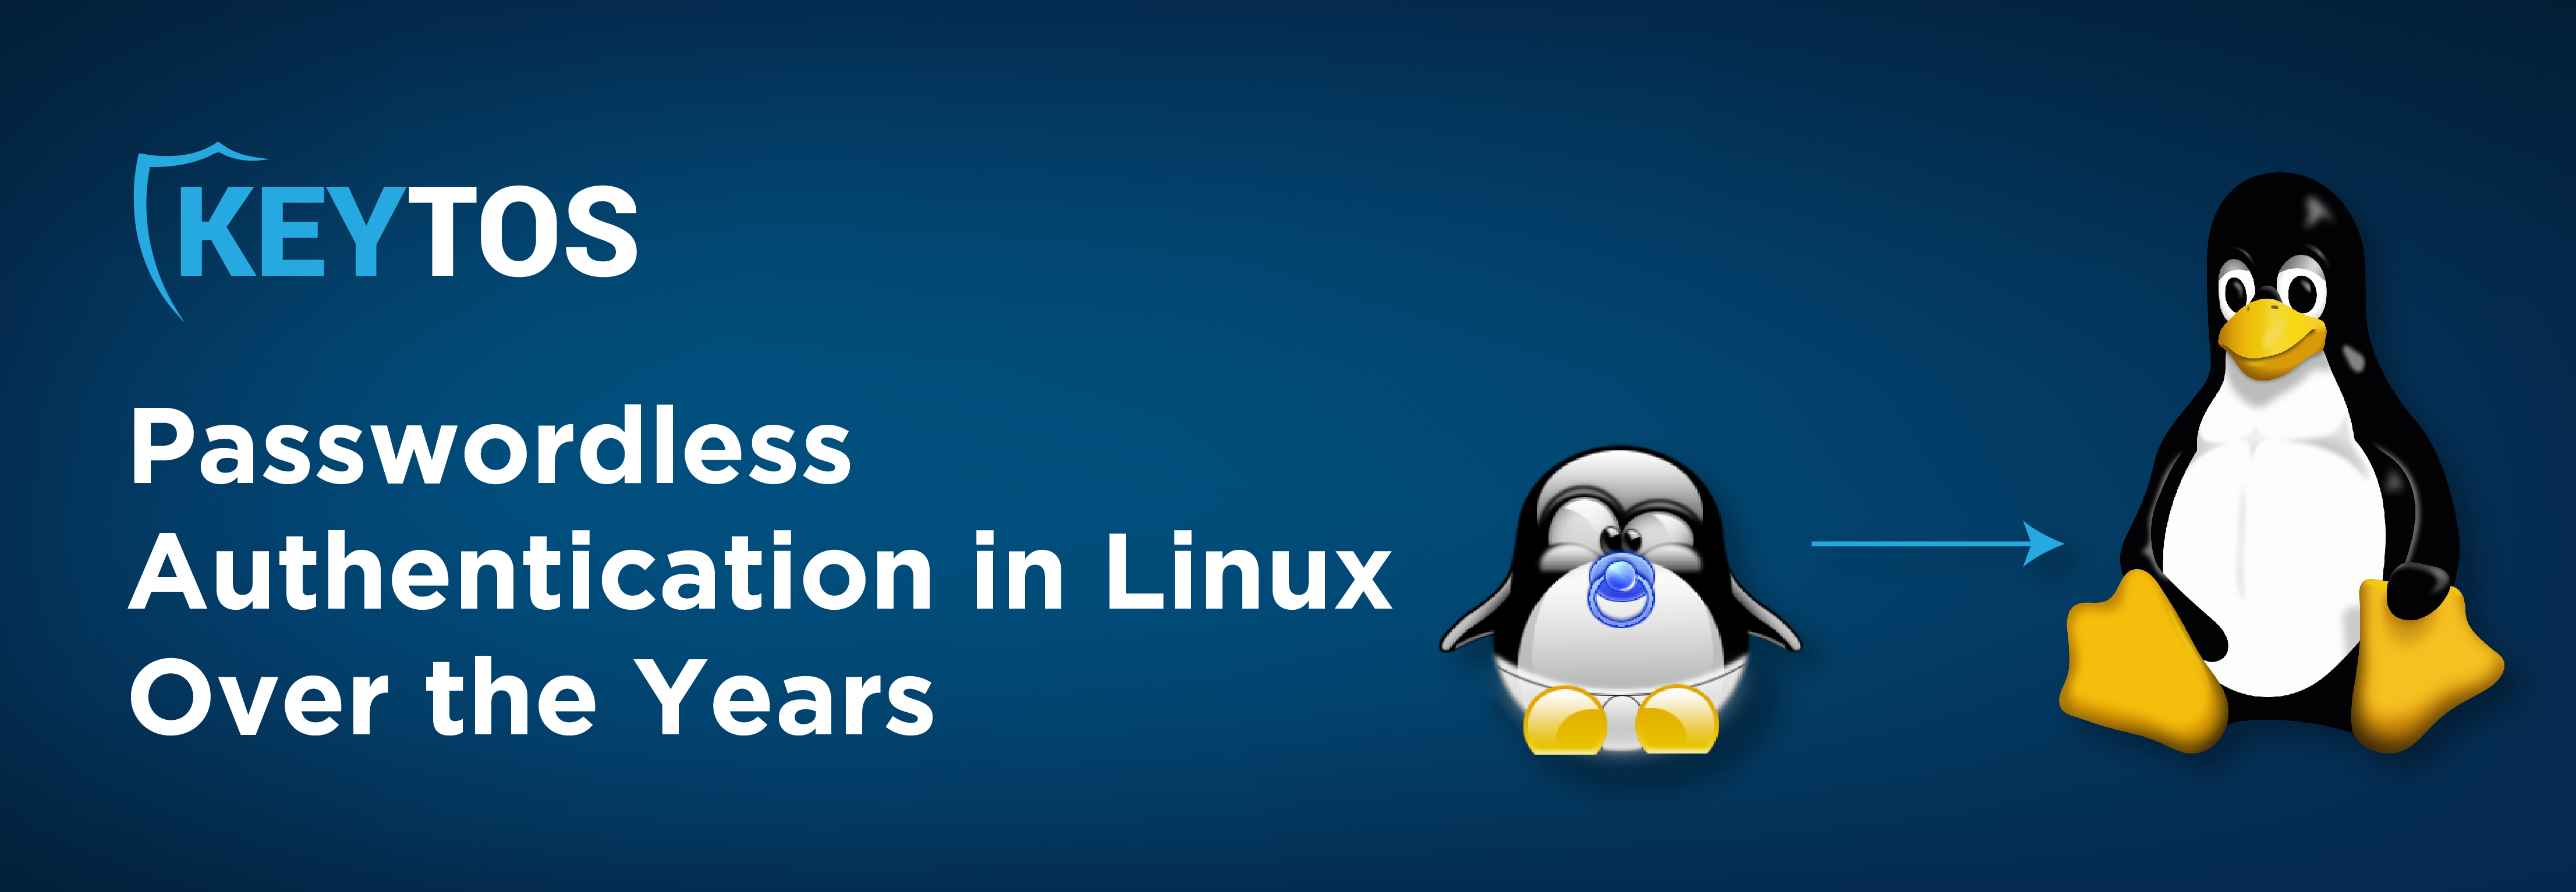 La historia de la autenticación sin contraseña en Linux